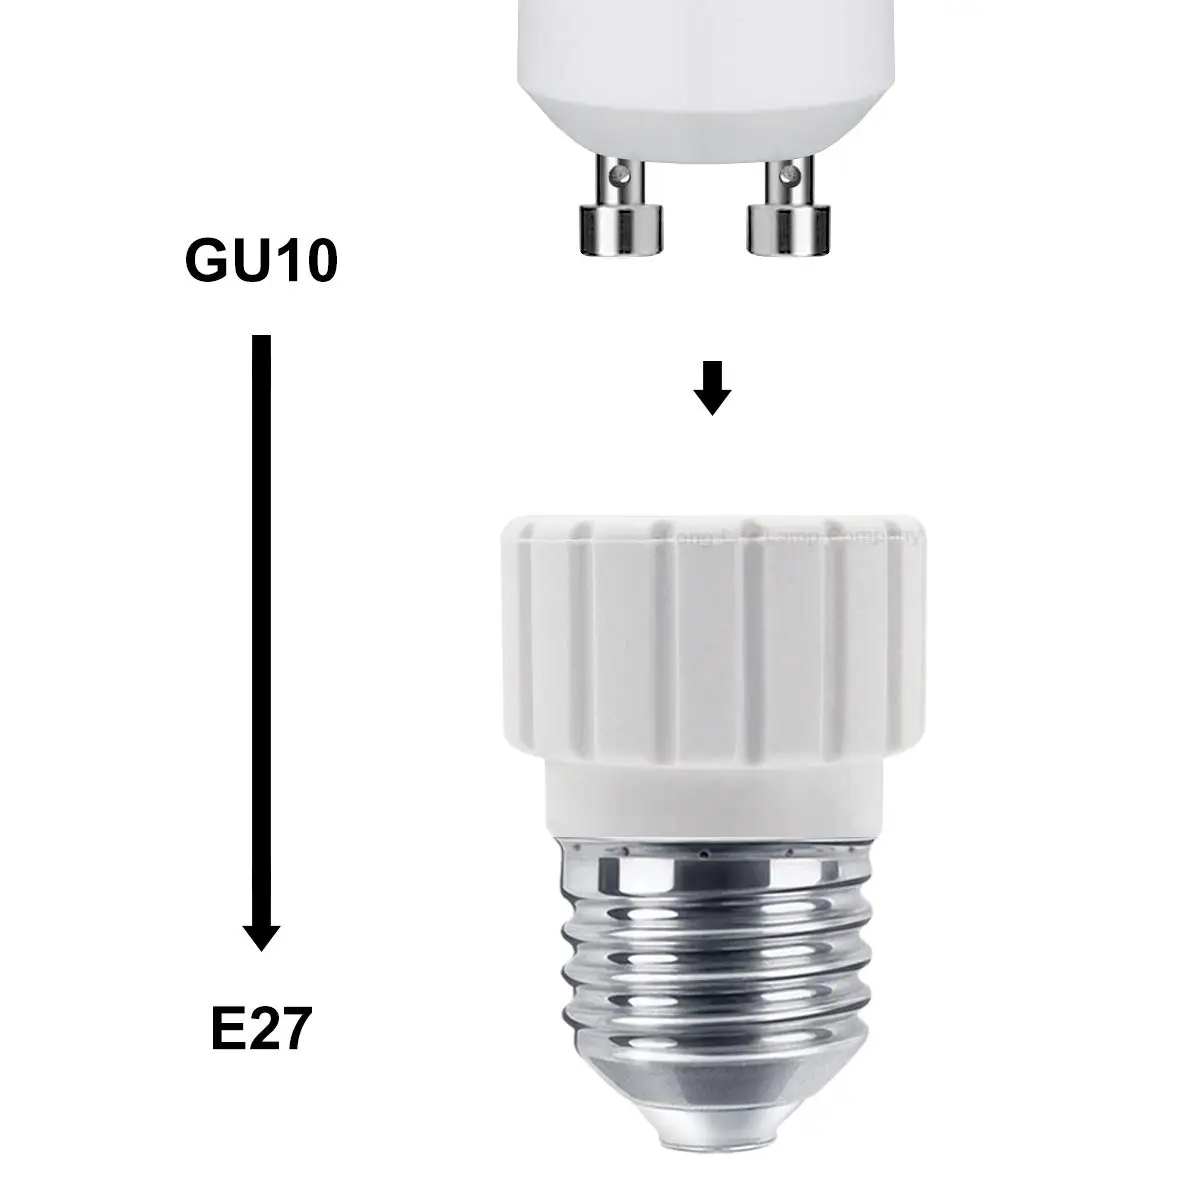 1 шт. E27 для GU10 конвертер Светодиодный свет лампа адаптер Винт Разъем керамический материал конвертер розеточный светильник лампочка